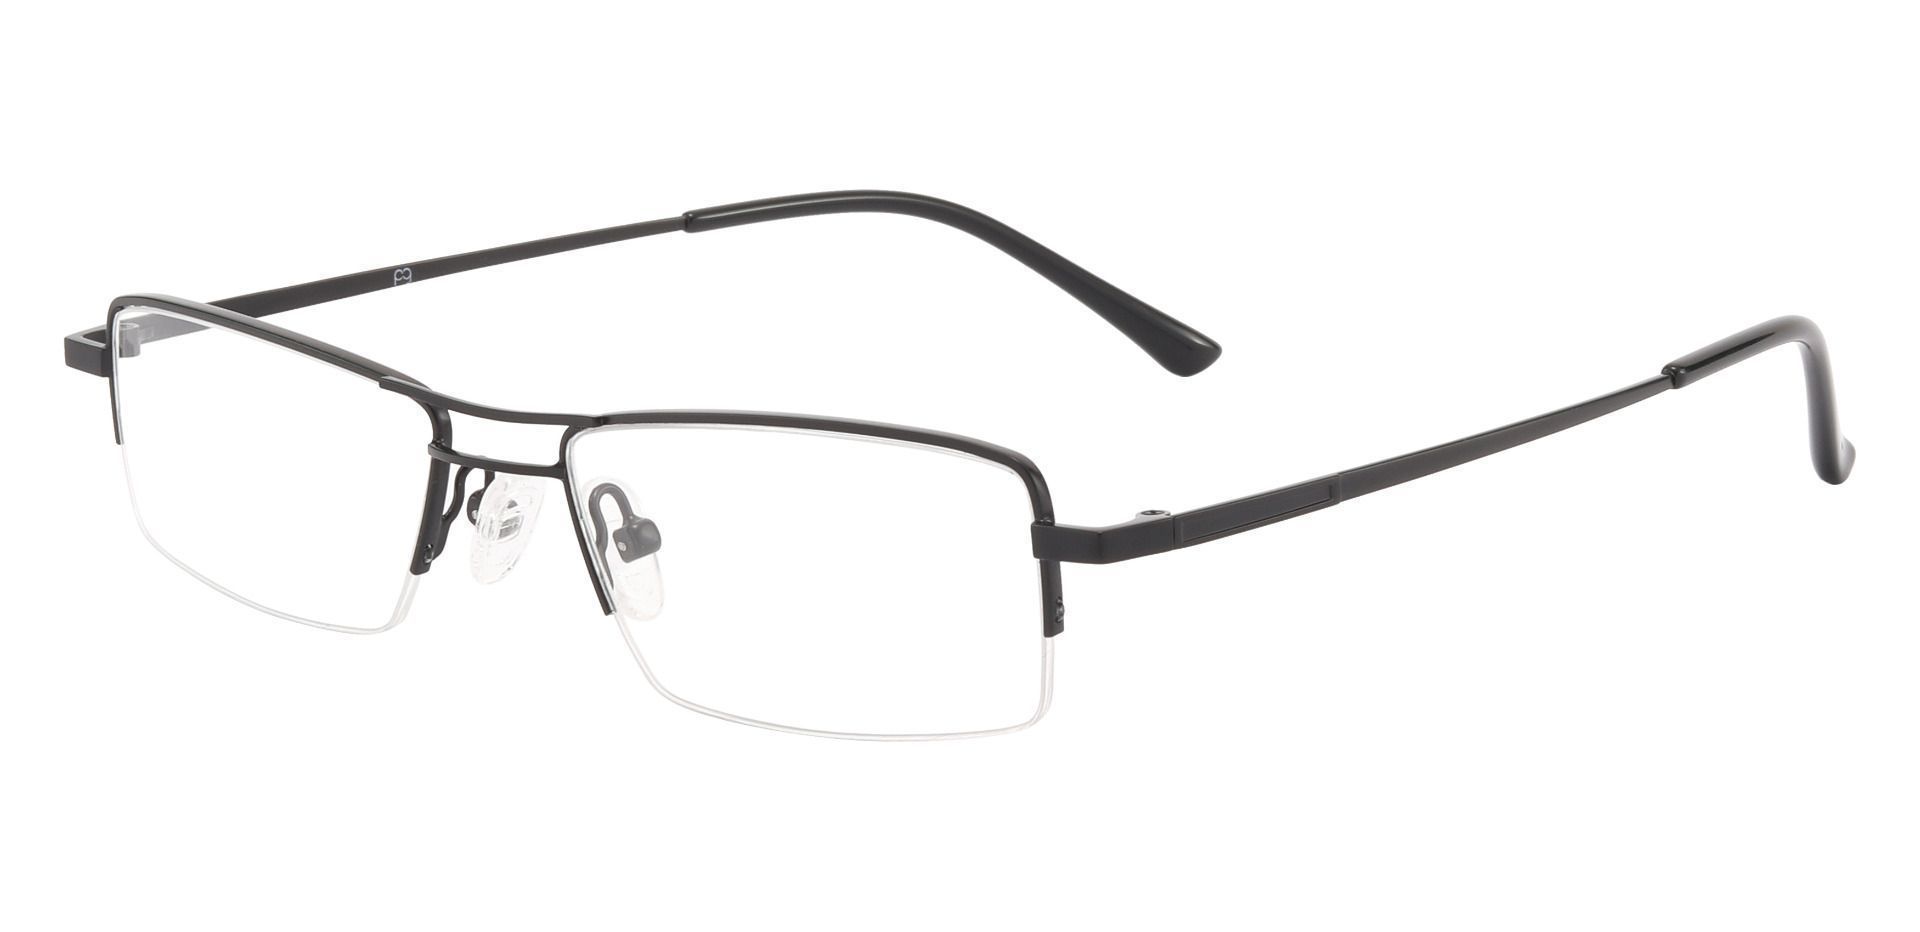 Gilbert Aviator Single Vision Glasses - Black